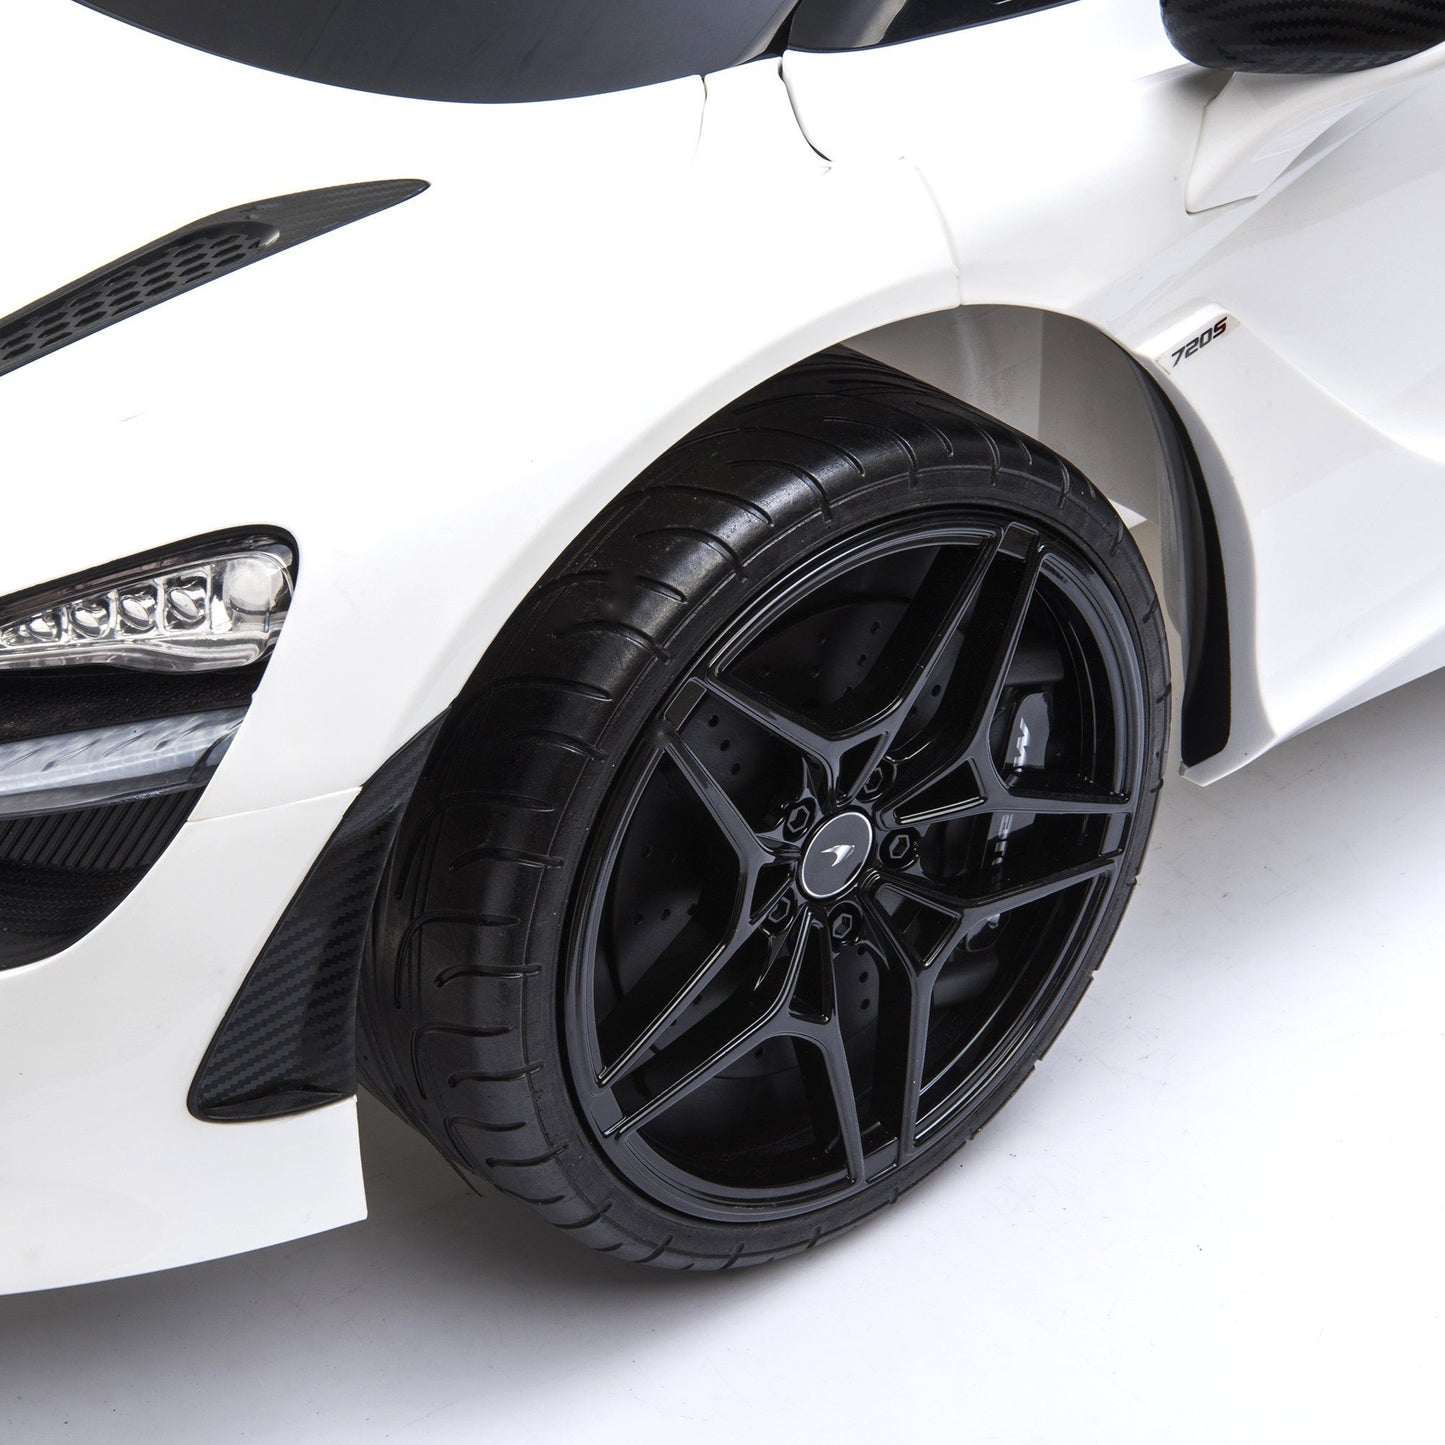 12V McLaren 720S 1 Seater Ride on Car | Freddo Toys